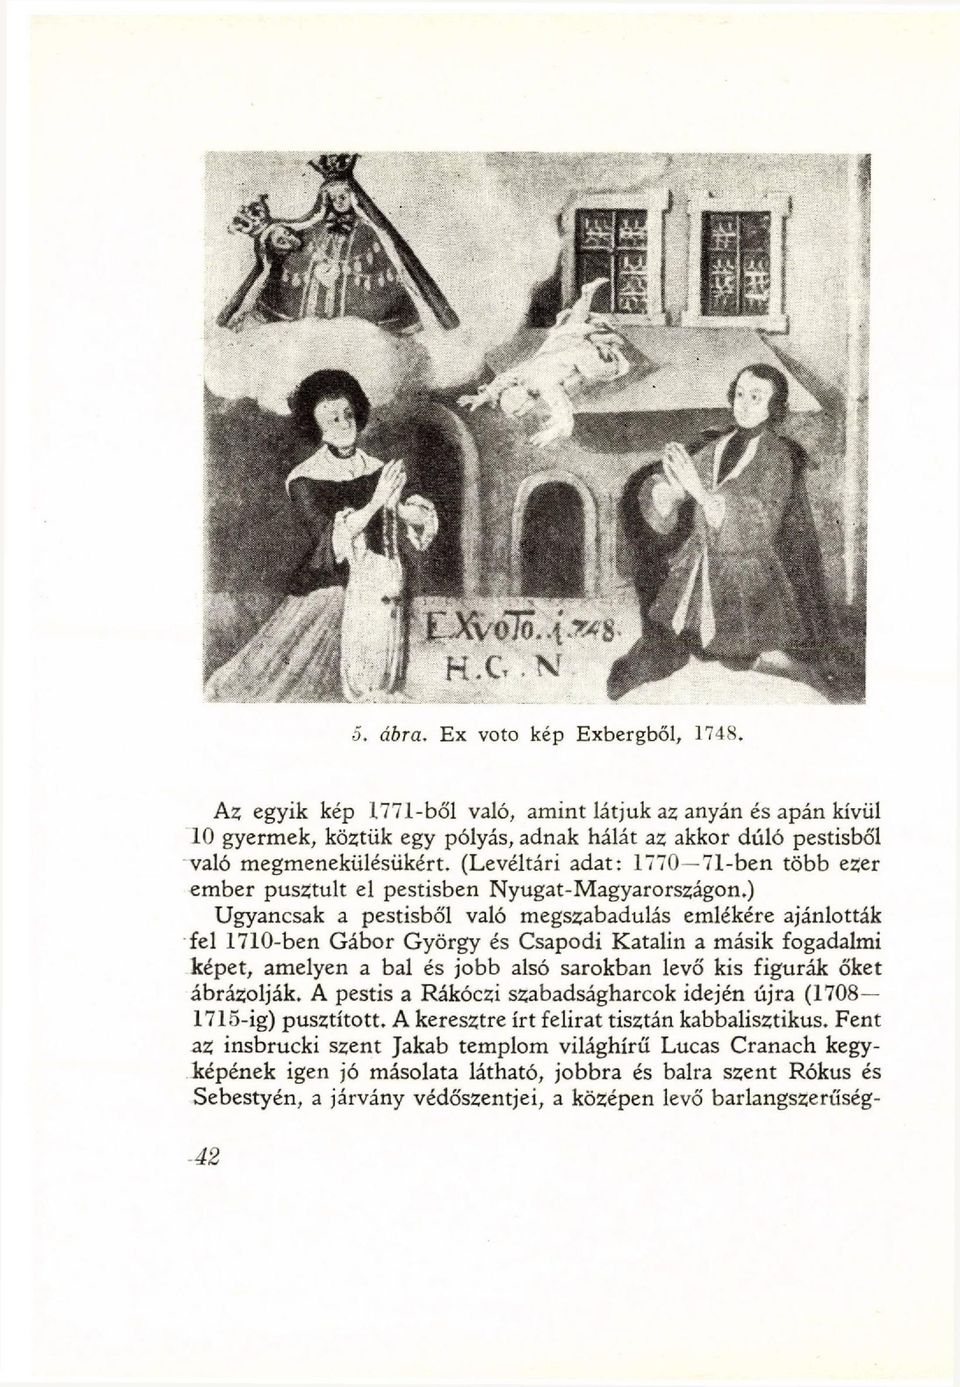 ) Ugyancsak a pestisből való megszabadulás emlékére ajánlották fel 1710-ben Gábor György és Csapodi Katalin a másik fogadalmi képet, amelyen a bal és jobb alsó sarokban levő kis figurák őket